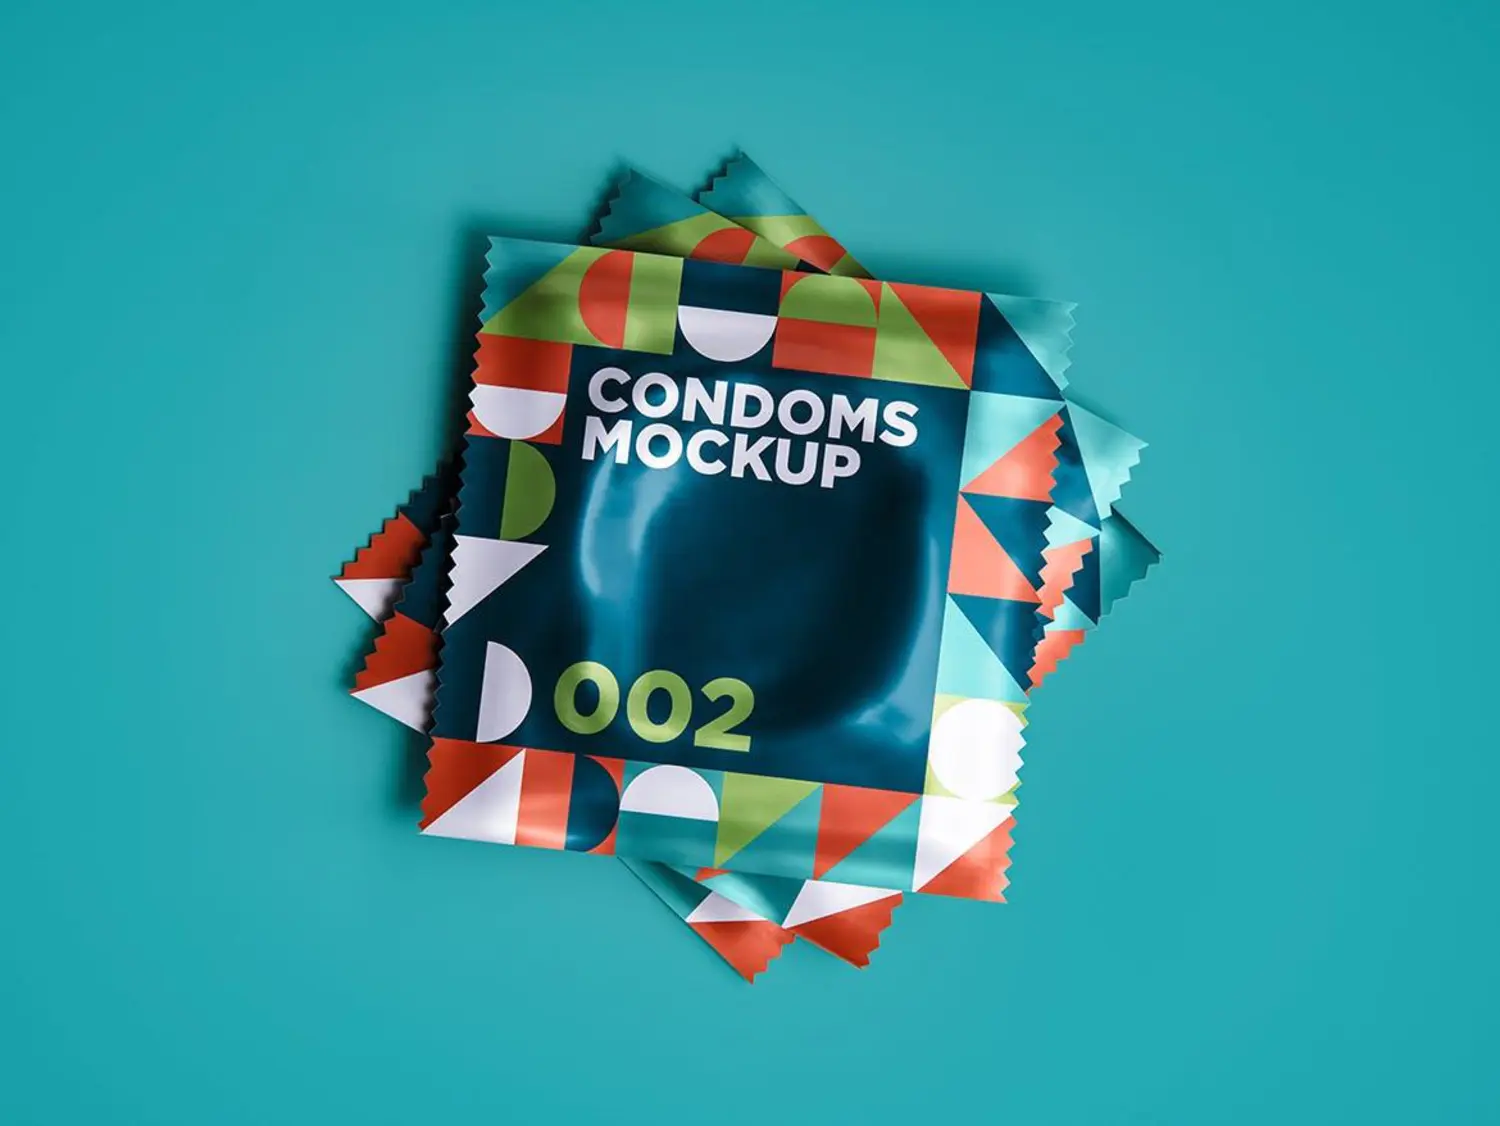 83 成人用品避孕套安全套包装设计样机v2 Condoms Mockup 002